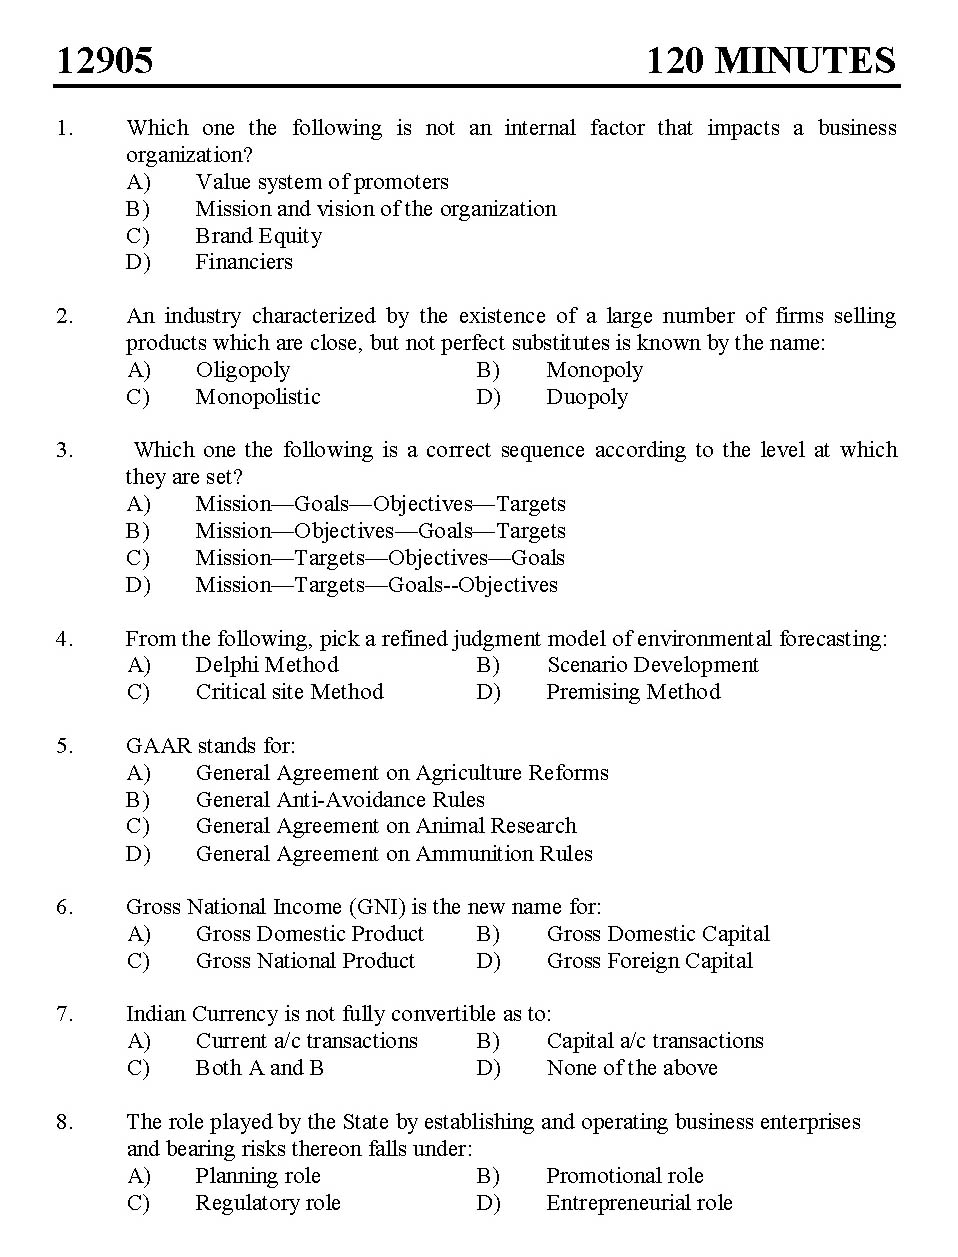 Kerala SET Commerce Exam 2012 Question Code 12905 1